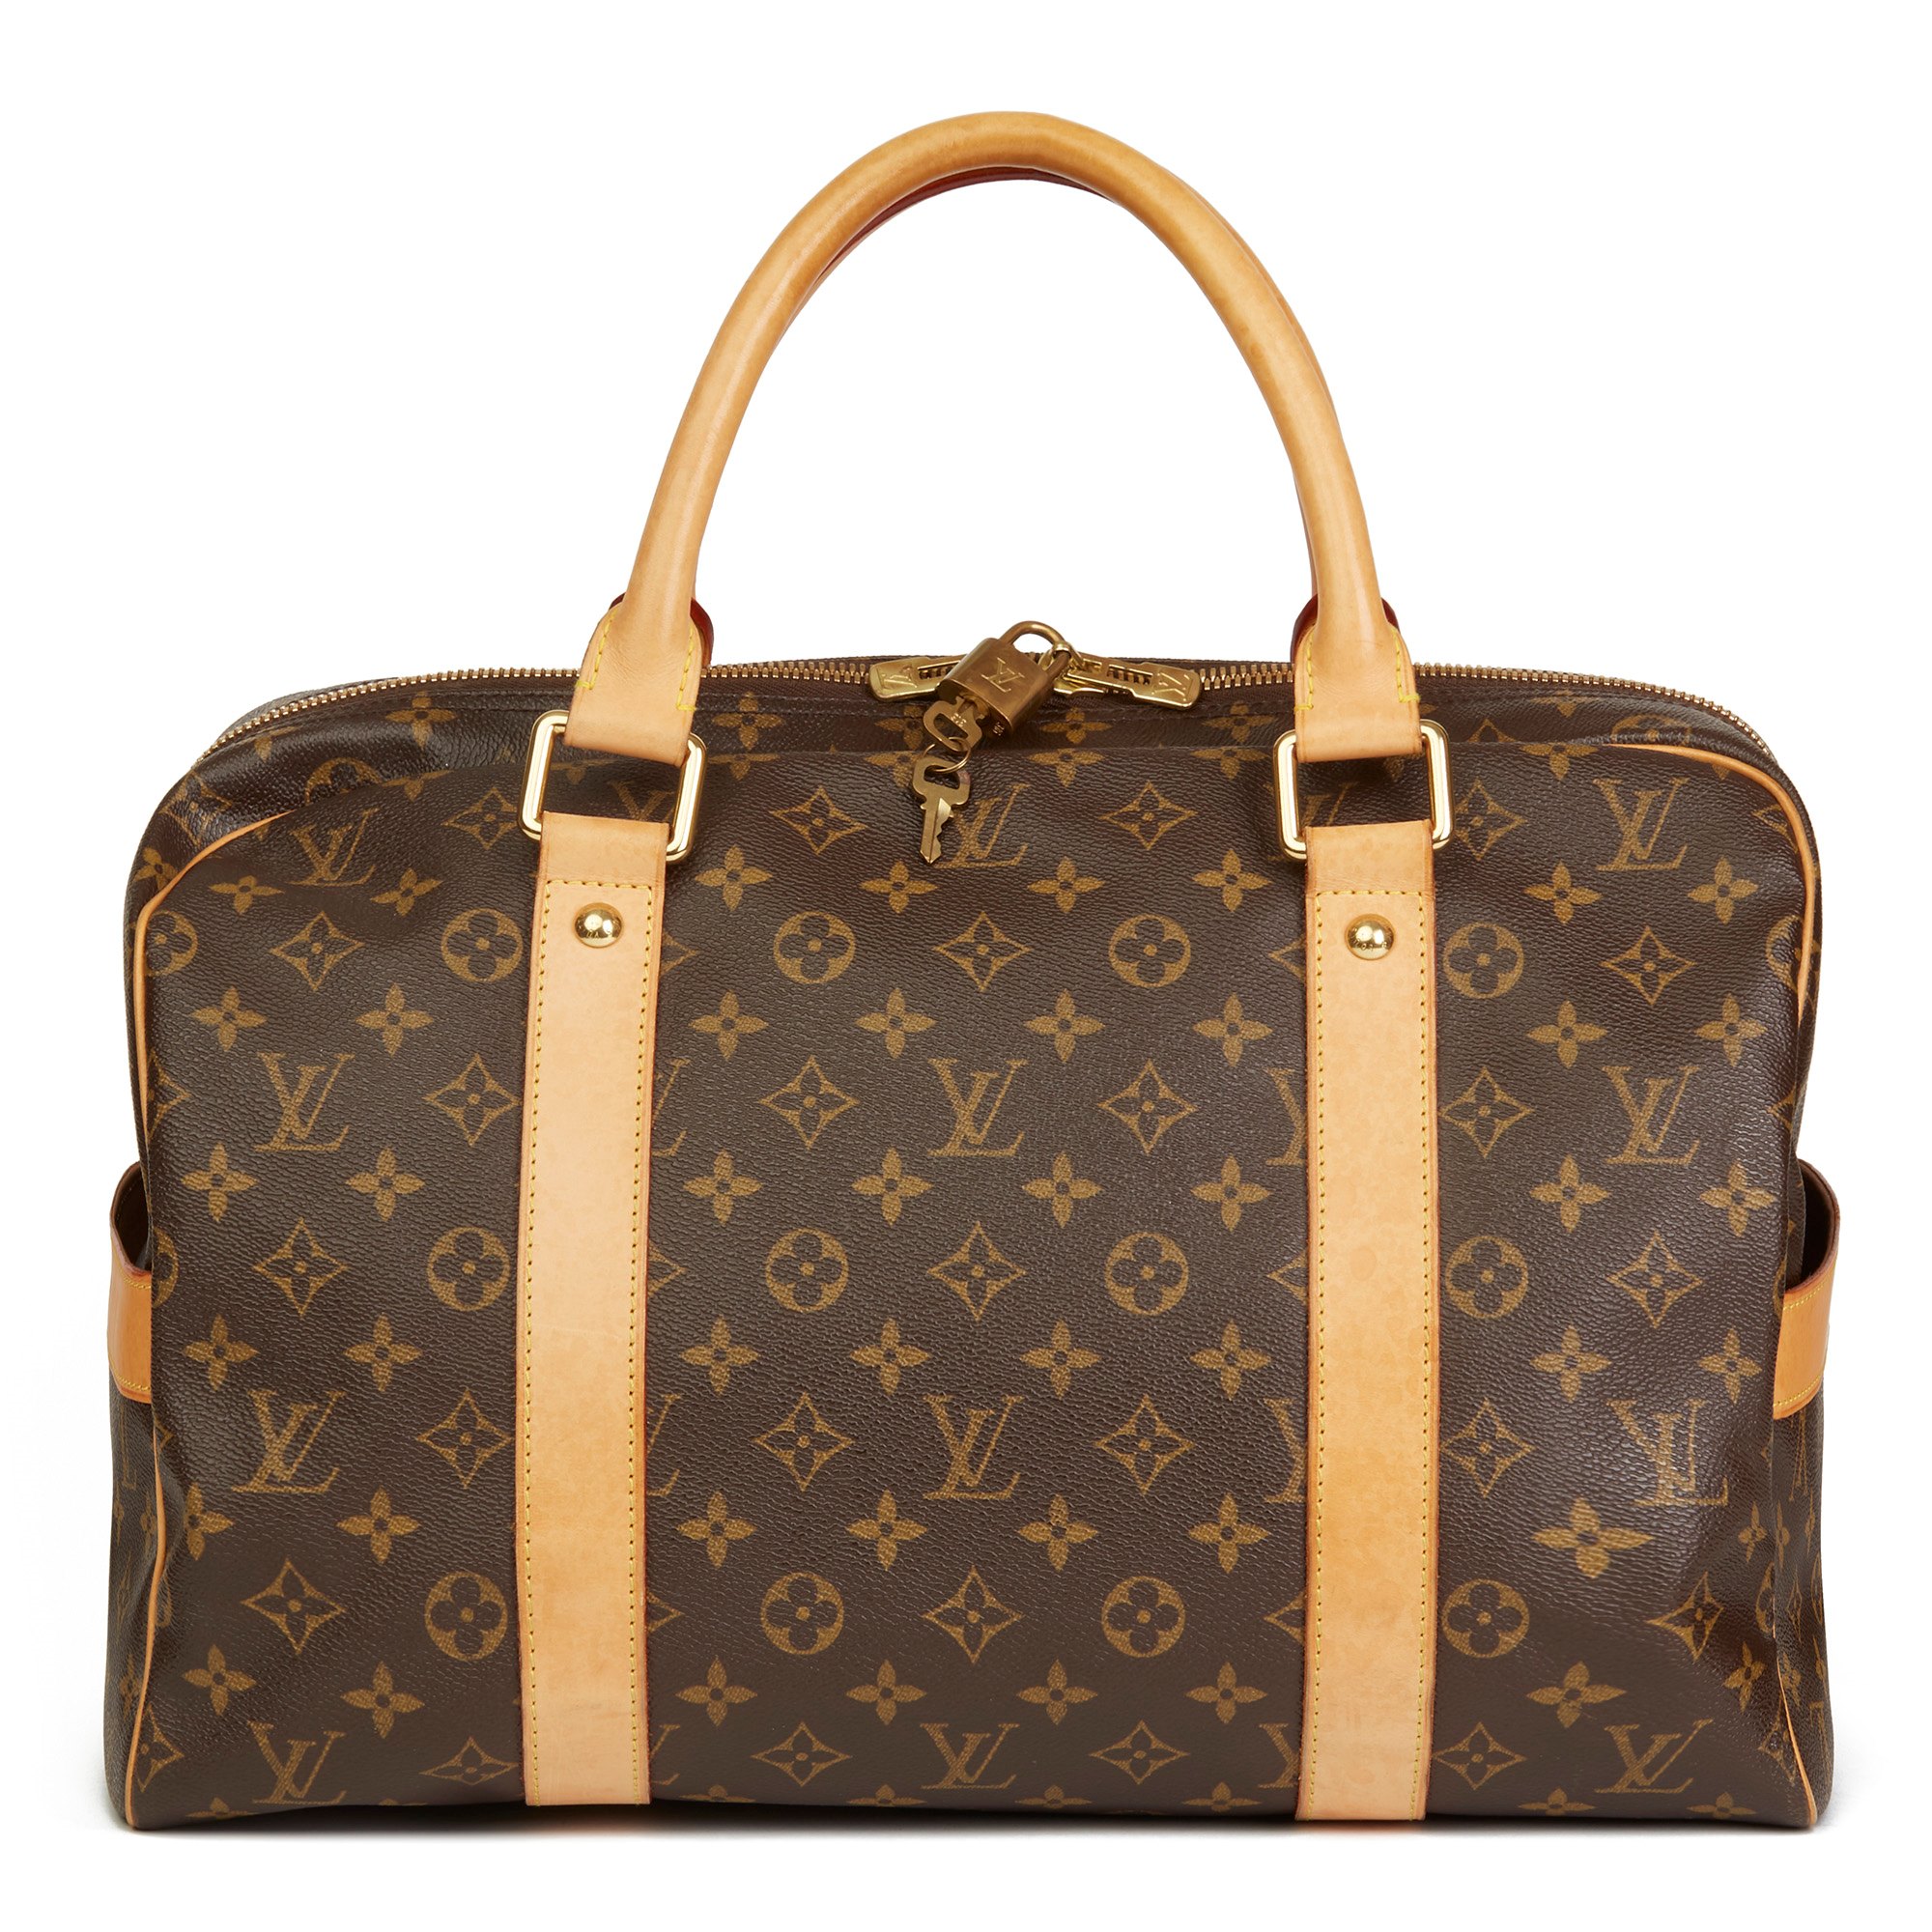 Louis Vuitton Carry All Bag Price Chopper | semashow.com